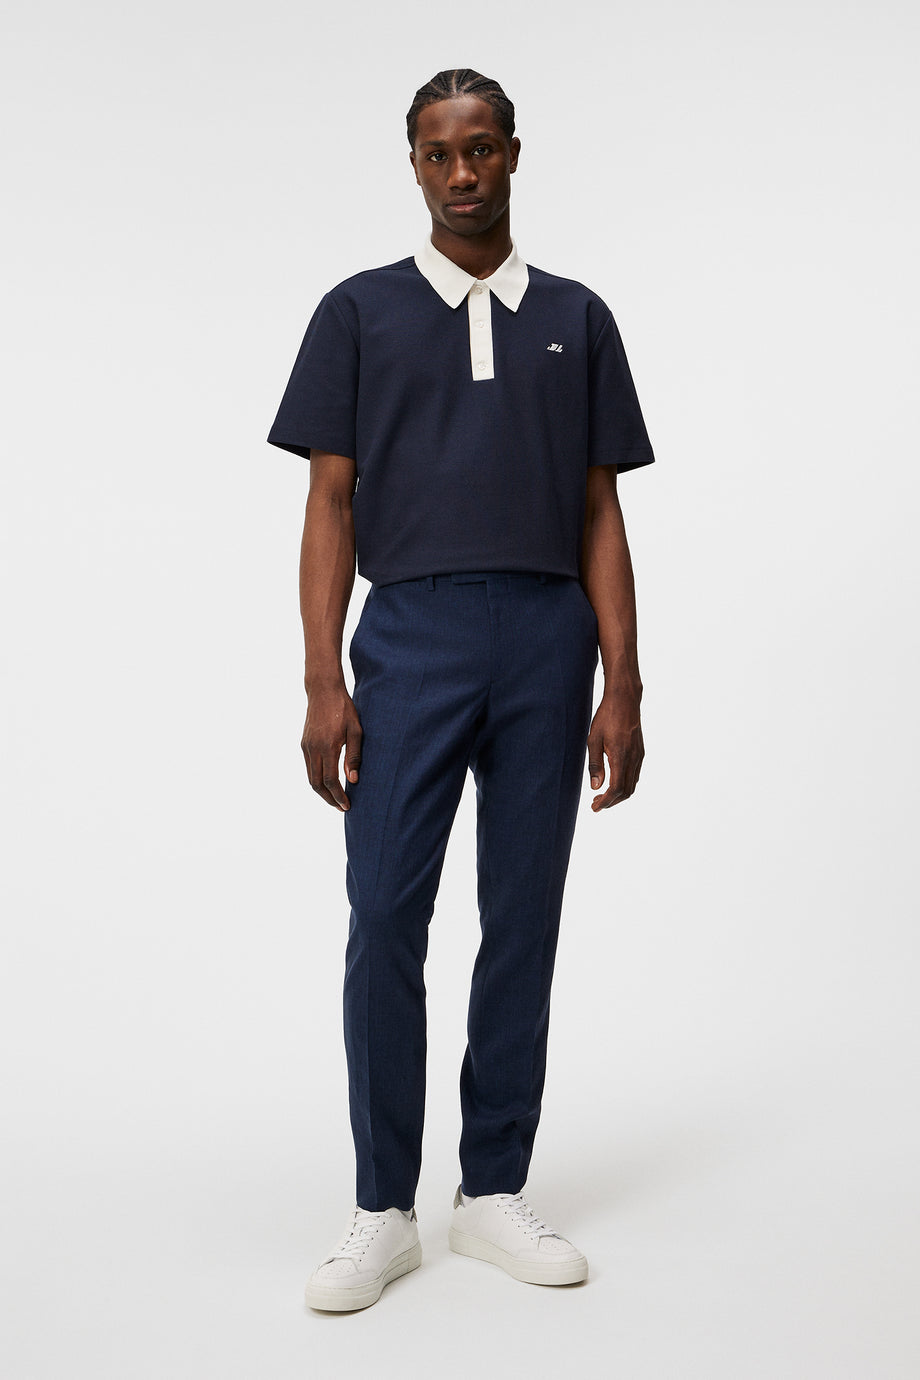 Grant Super Linen Pants / JL Navy